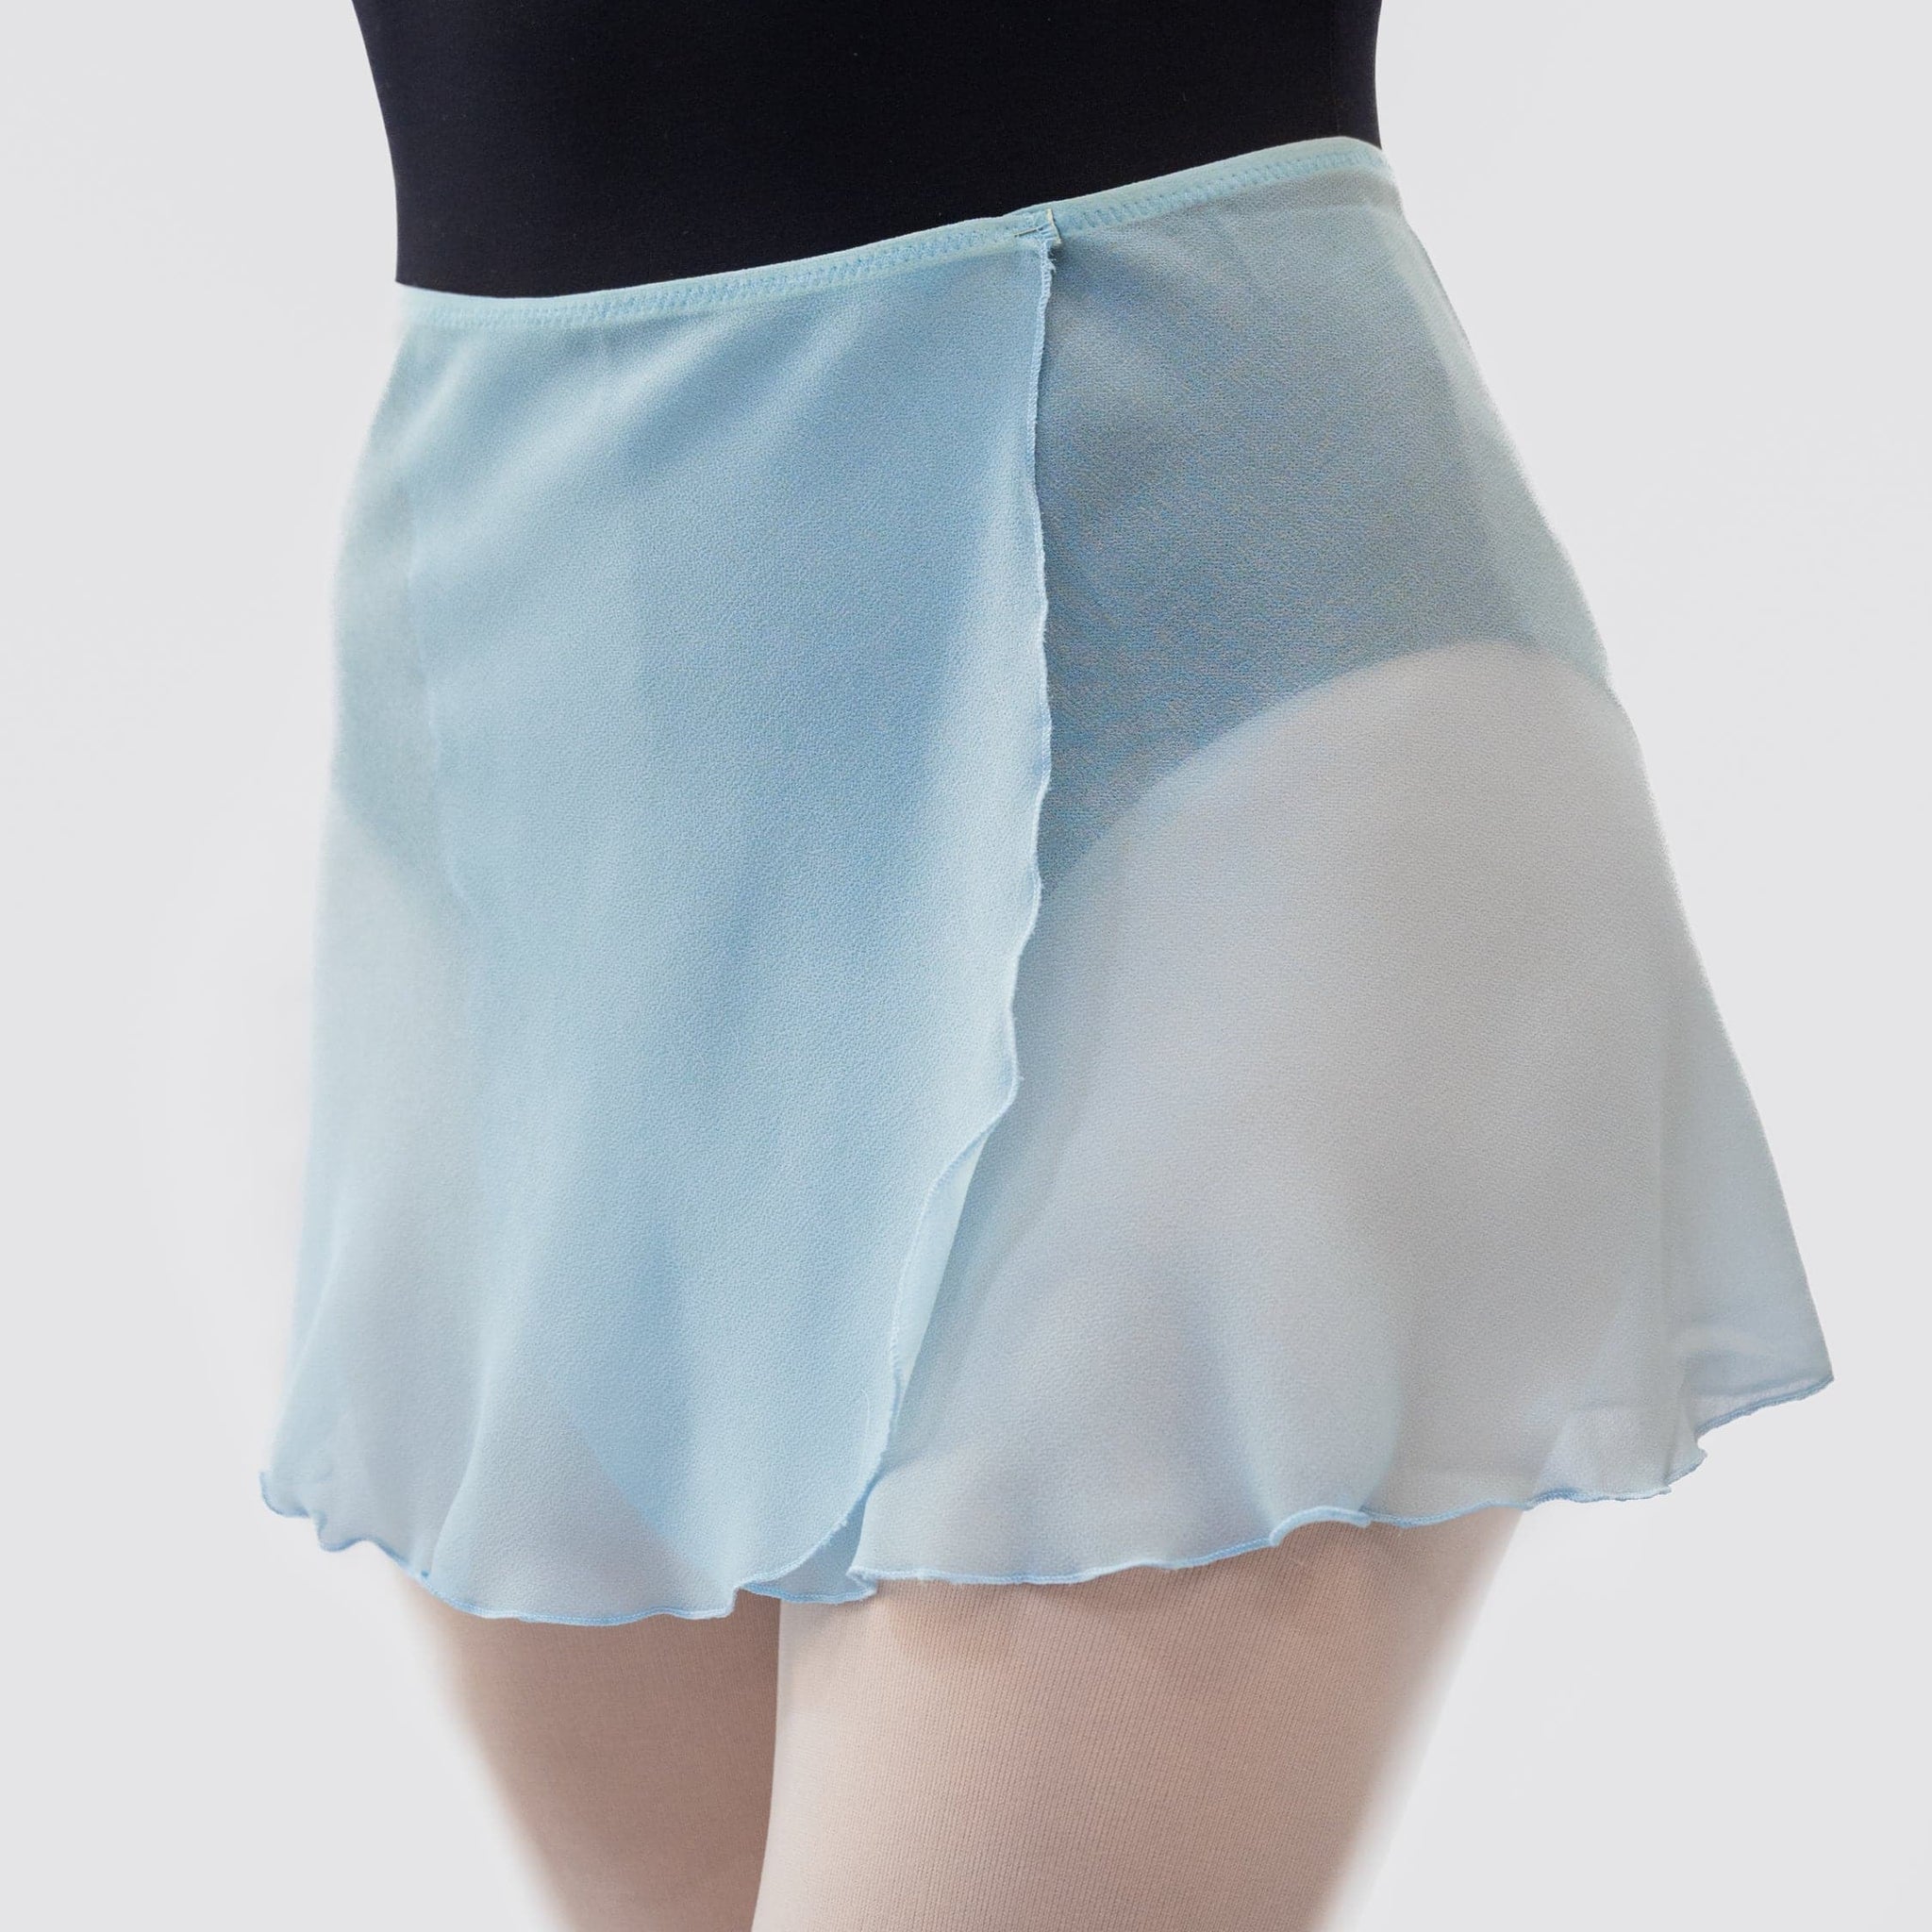 Atelier Light Dance MP301 della Wrap - Blue Skirt MP Short Danza